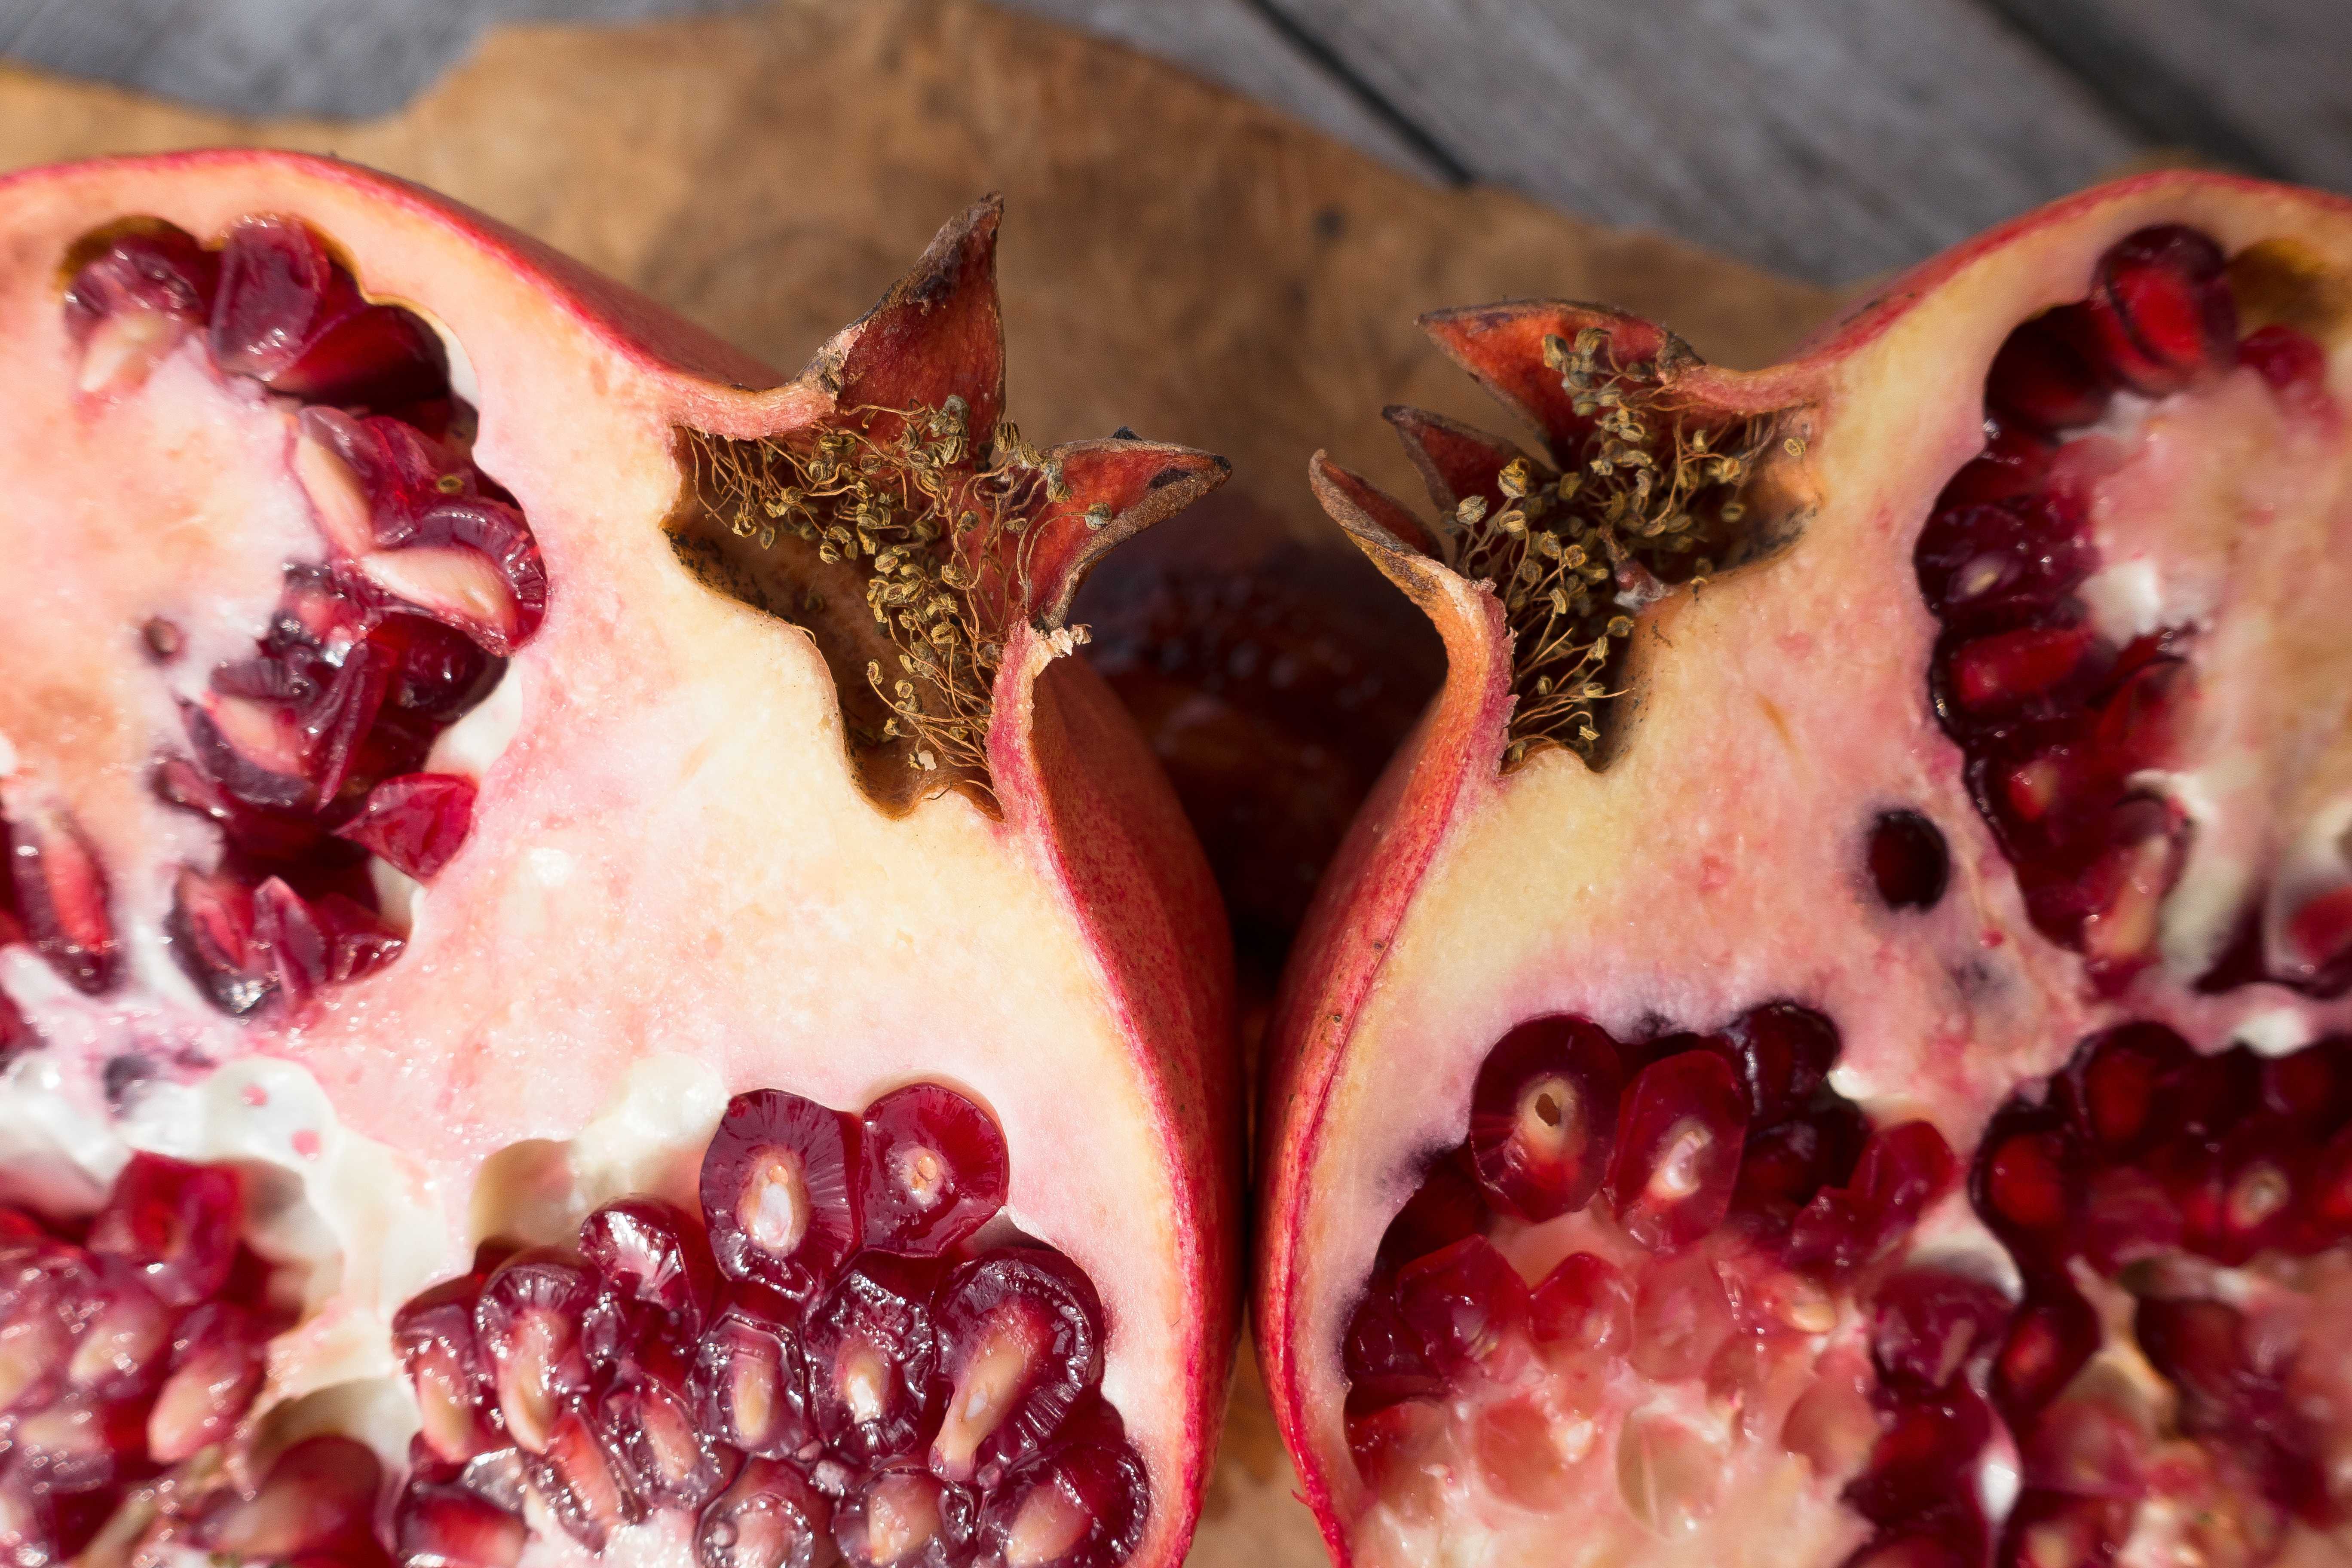 Гранат: польза и вред для здоровья. состав и целебные свойства короля фруктов